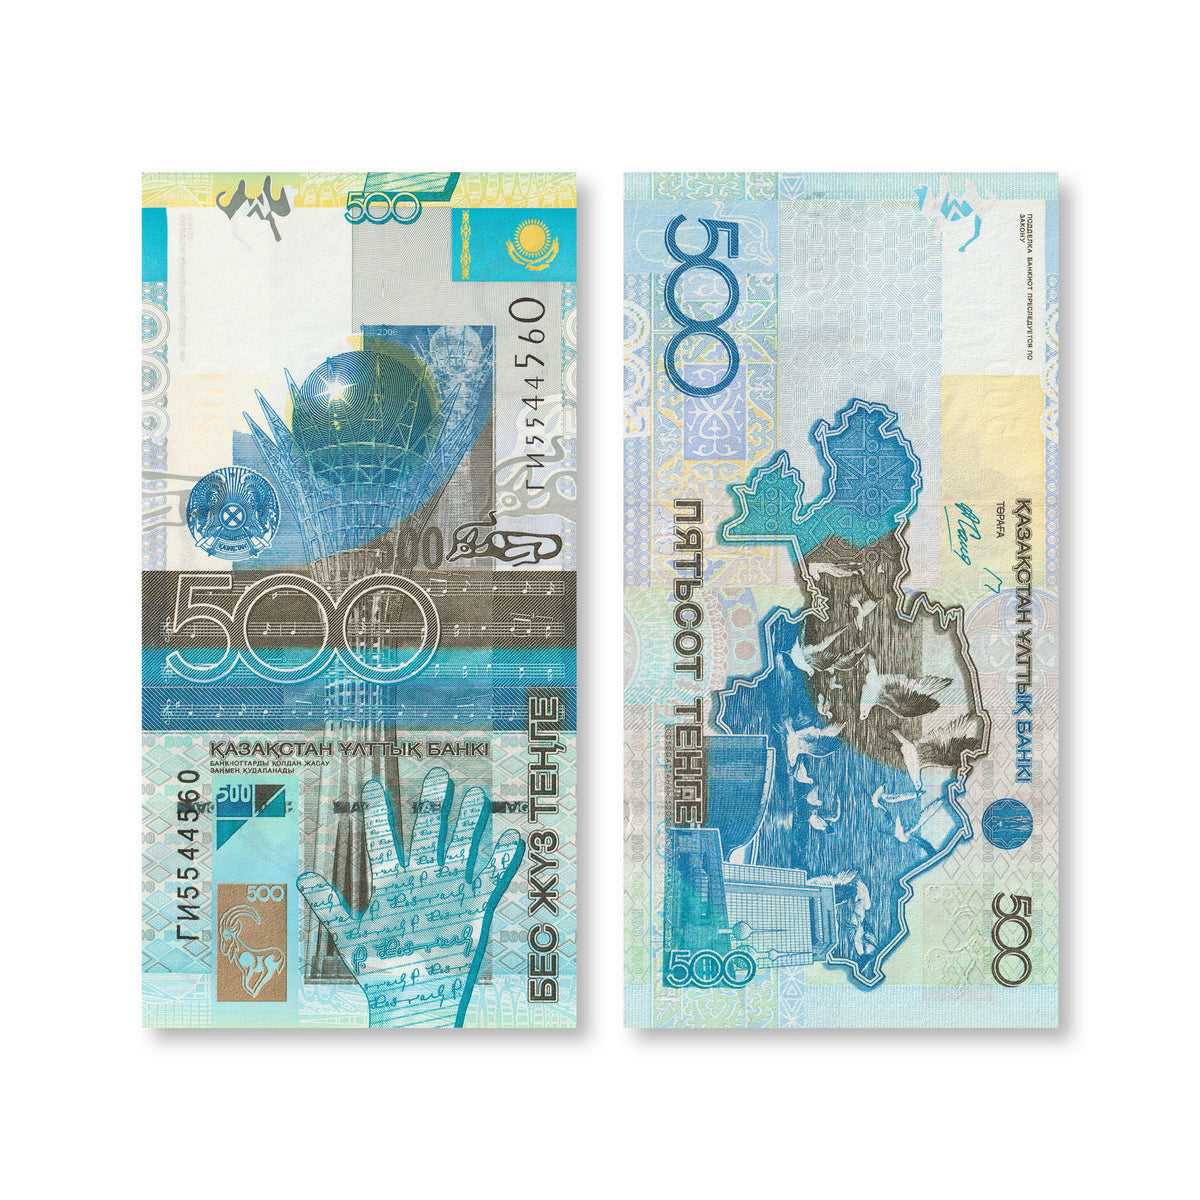 Kazakhstan 500 Tenge, 2006, B129a, P29a, UNC - Robert's World Money - World Banknotes